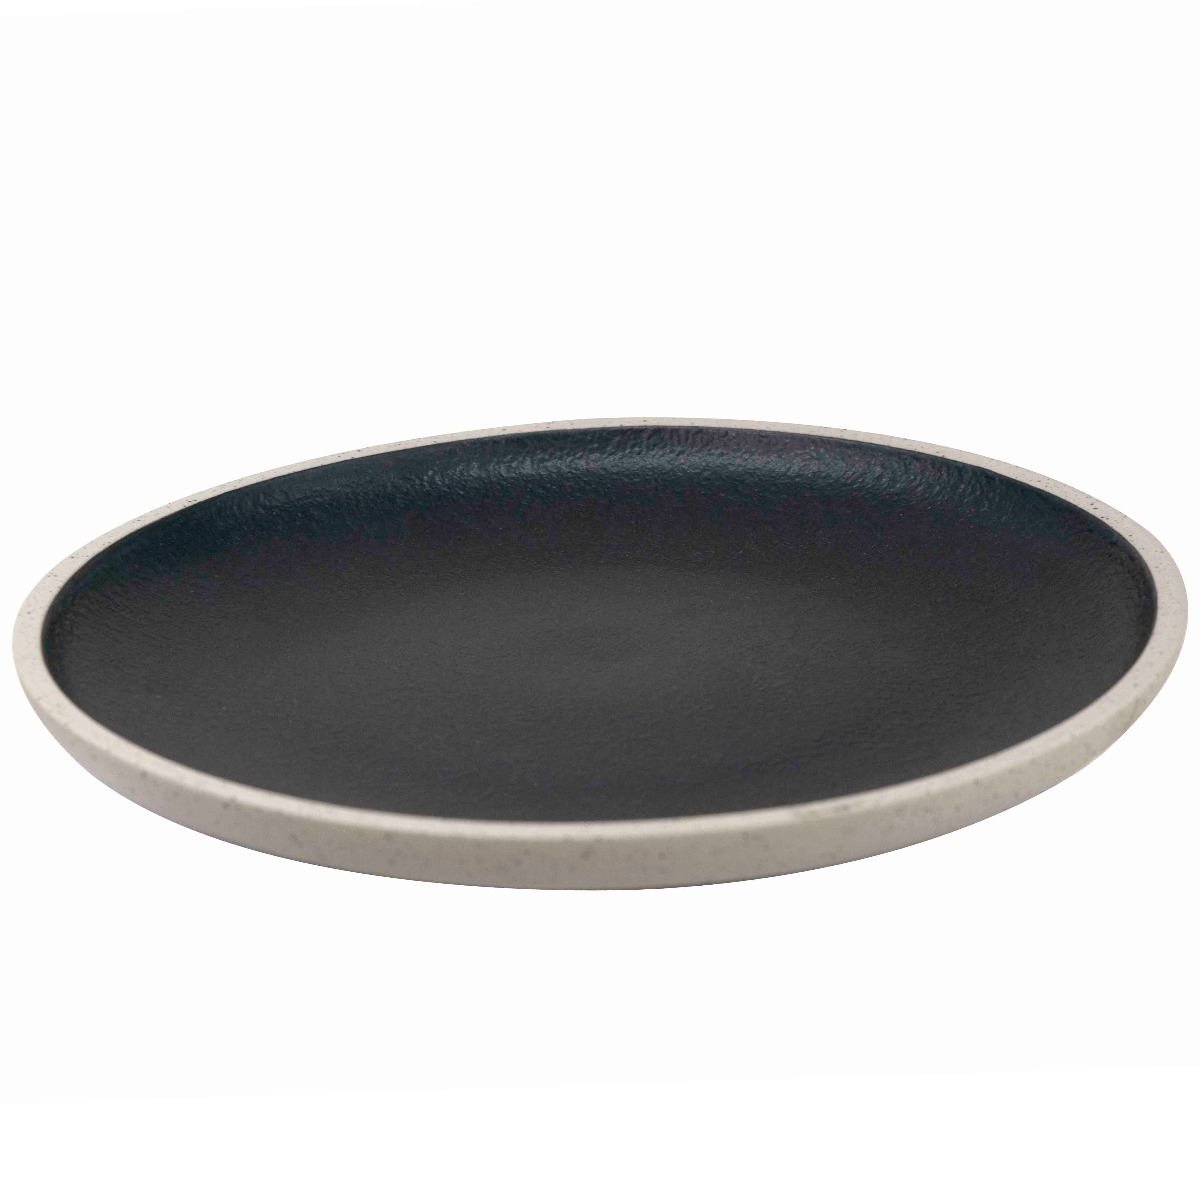 Ceramic serving plate 20cm